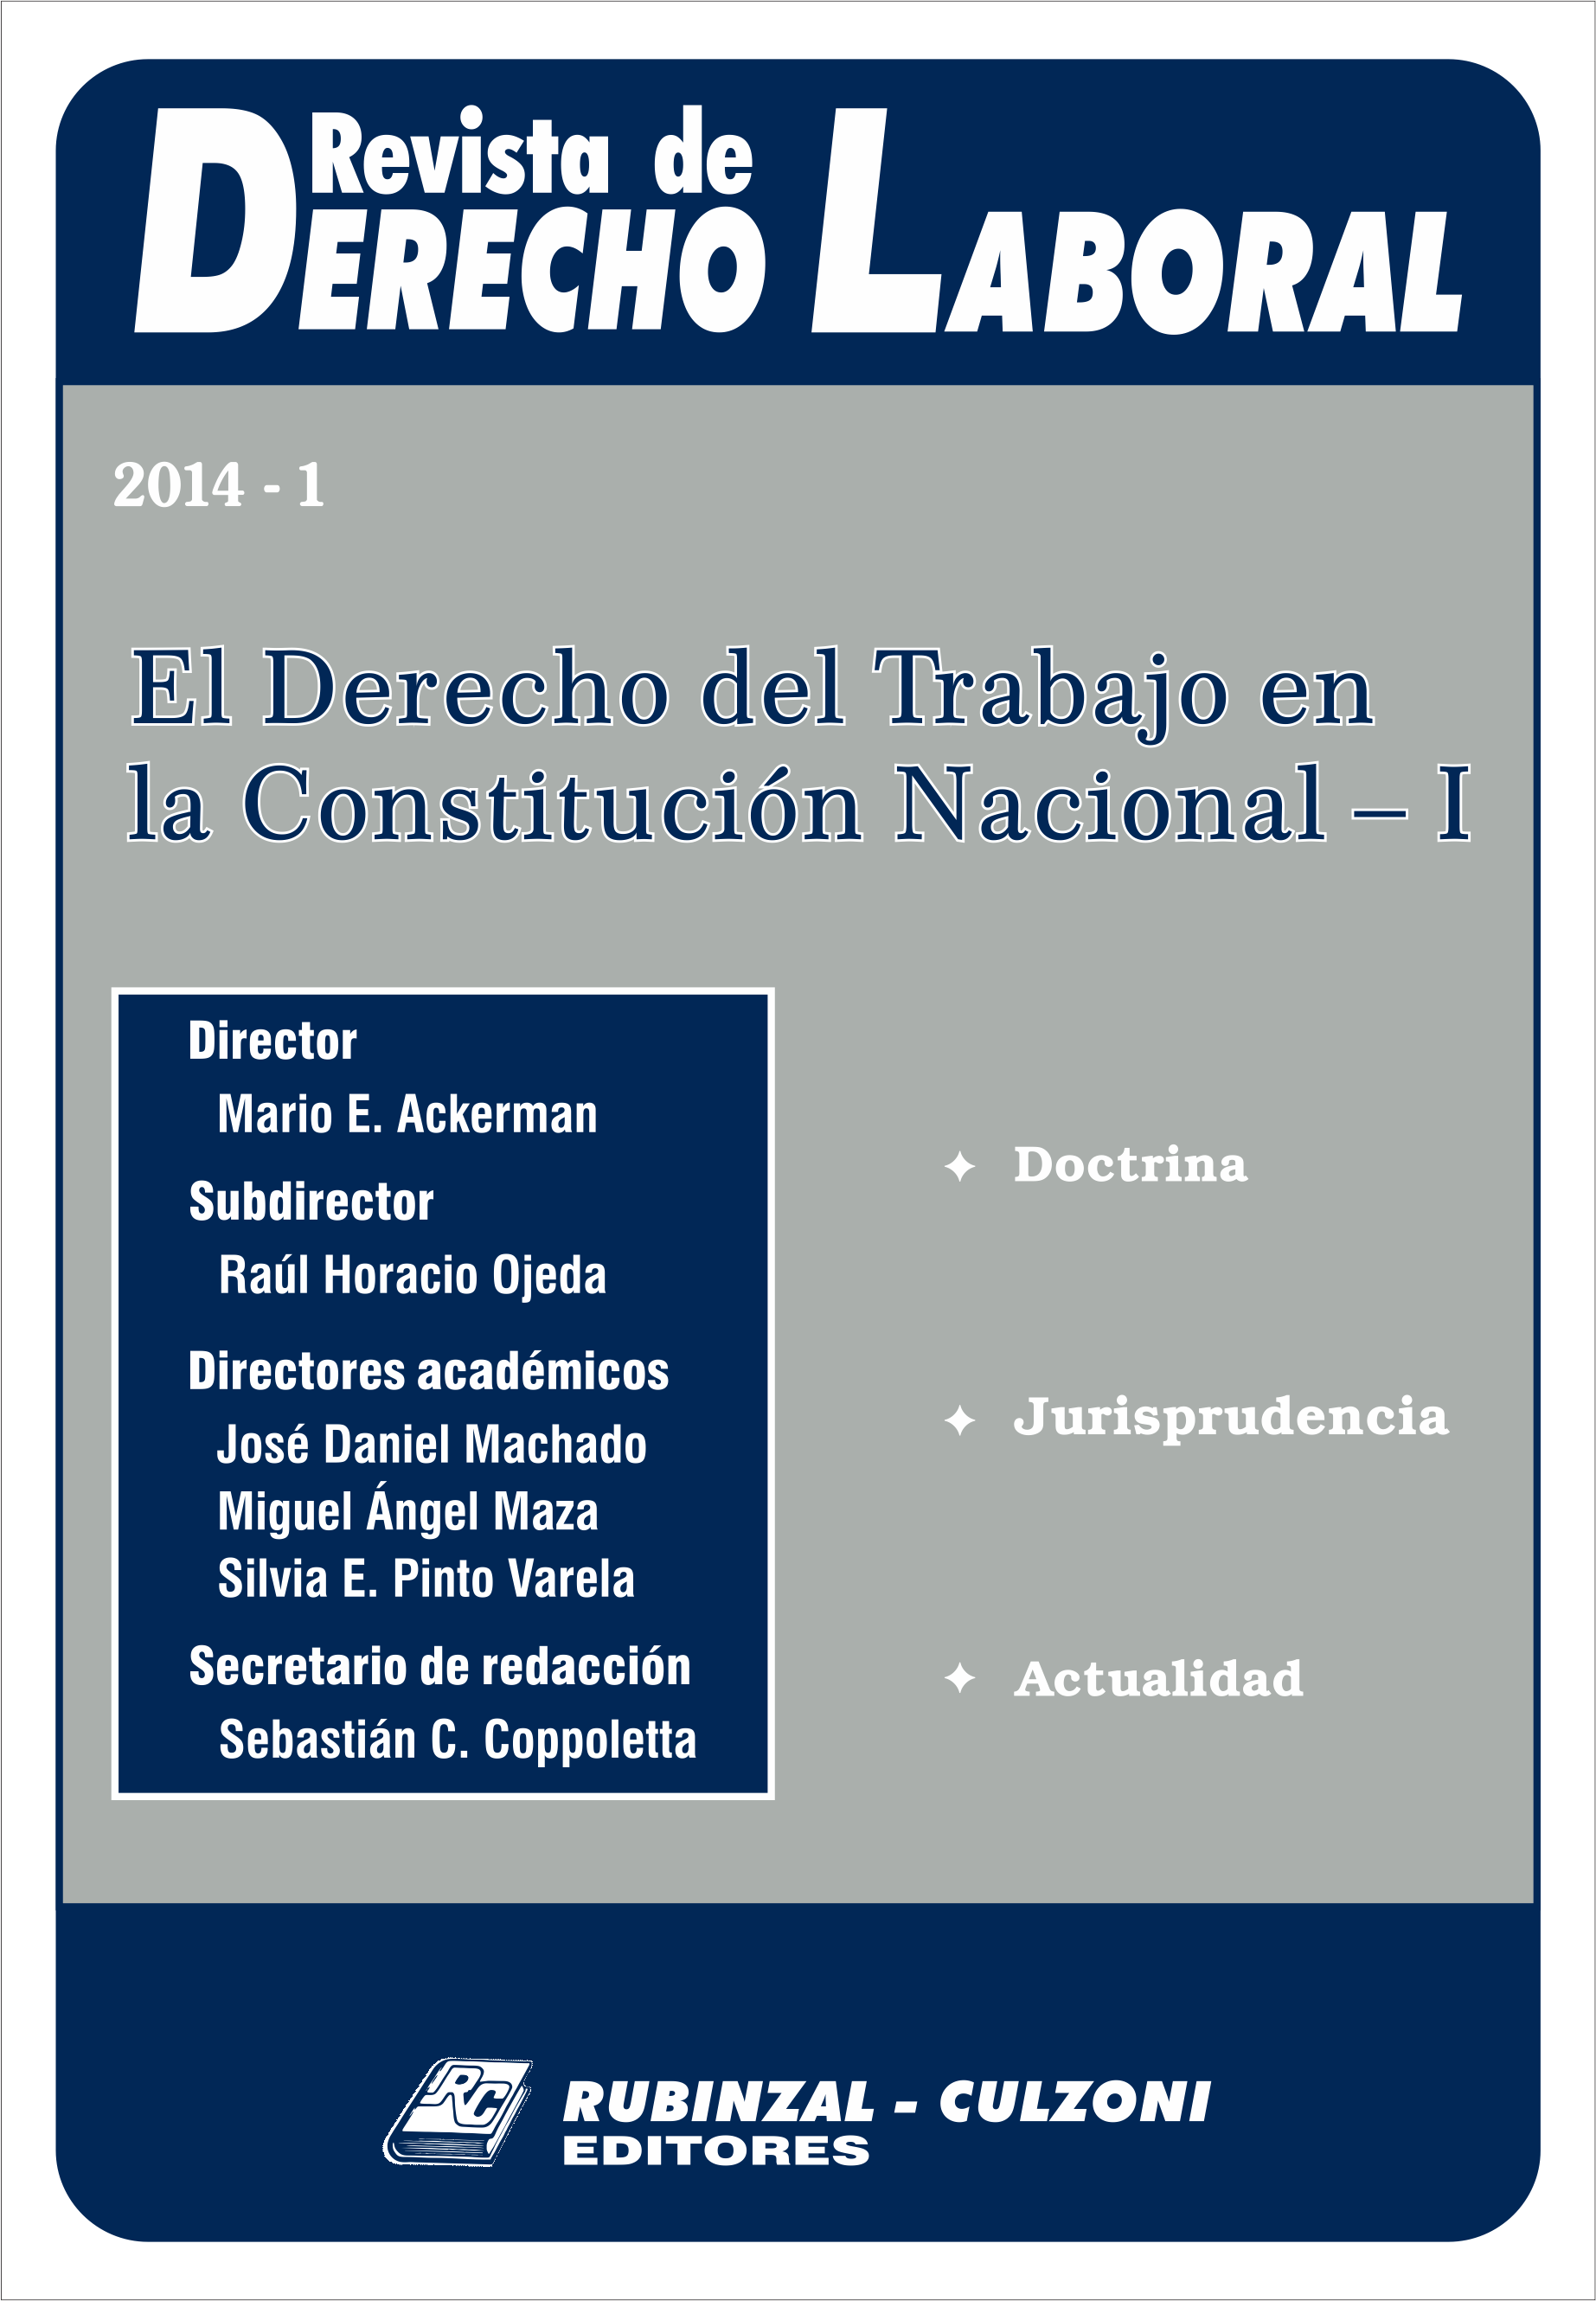 Revista de Derecho Laboral - El Derecho del Trabajo en la Constitución Nacional - I.